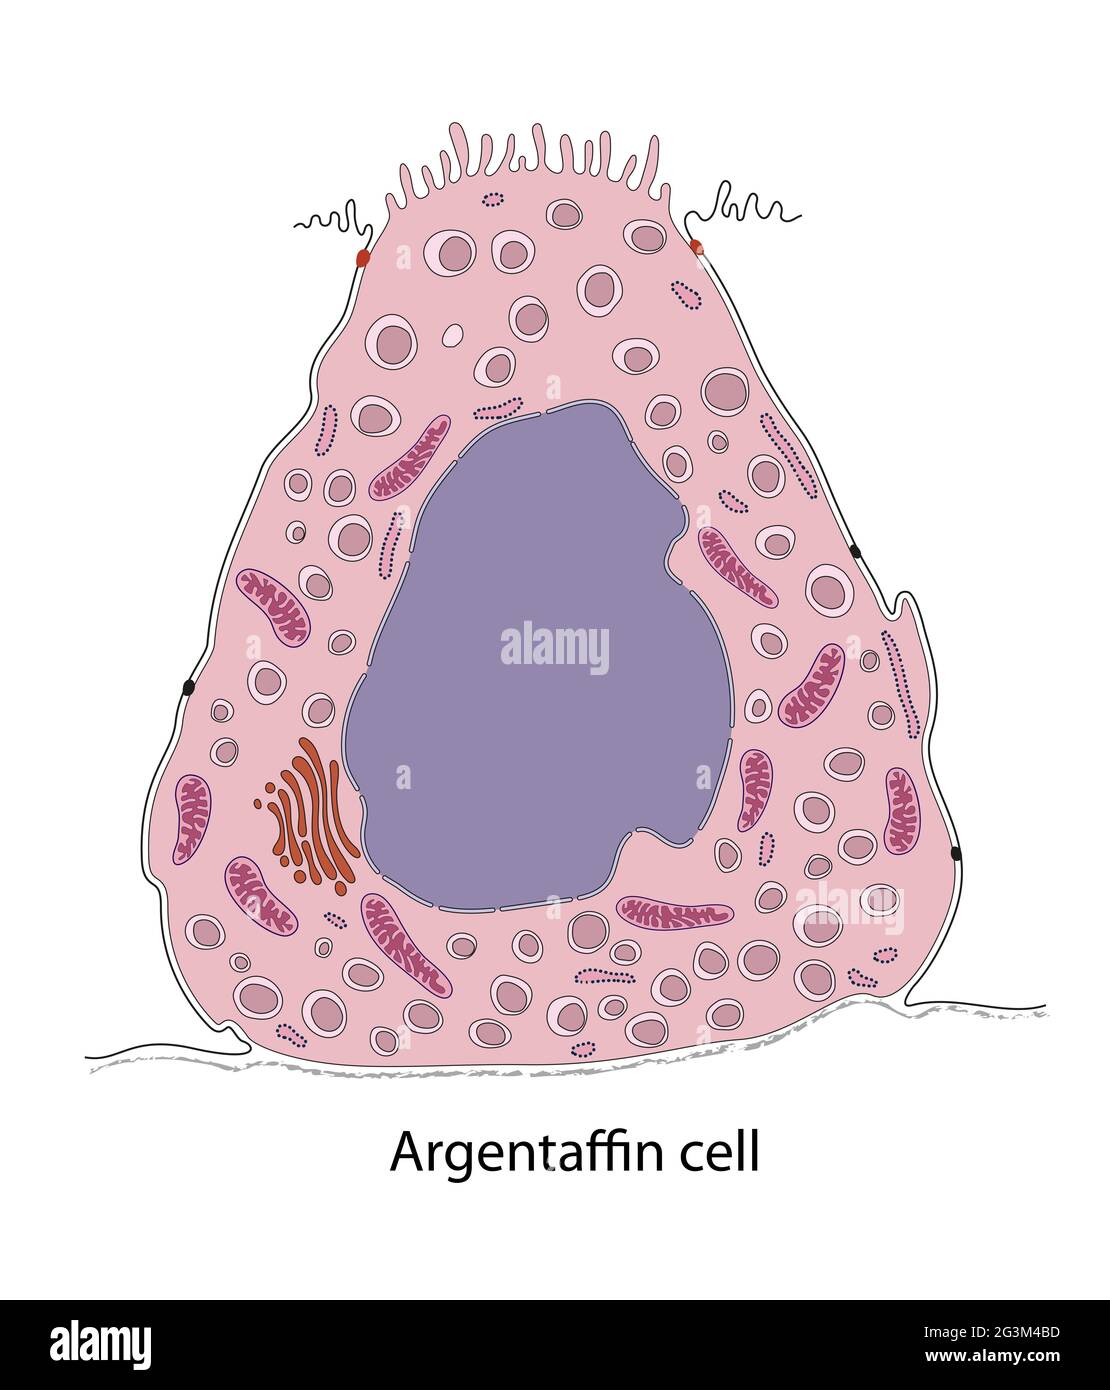 Diagramme de la cellule gastrique d'argentaffin Banque D'Images